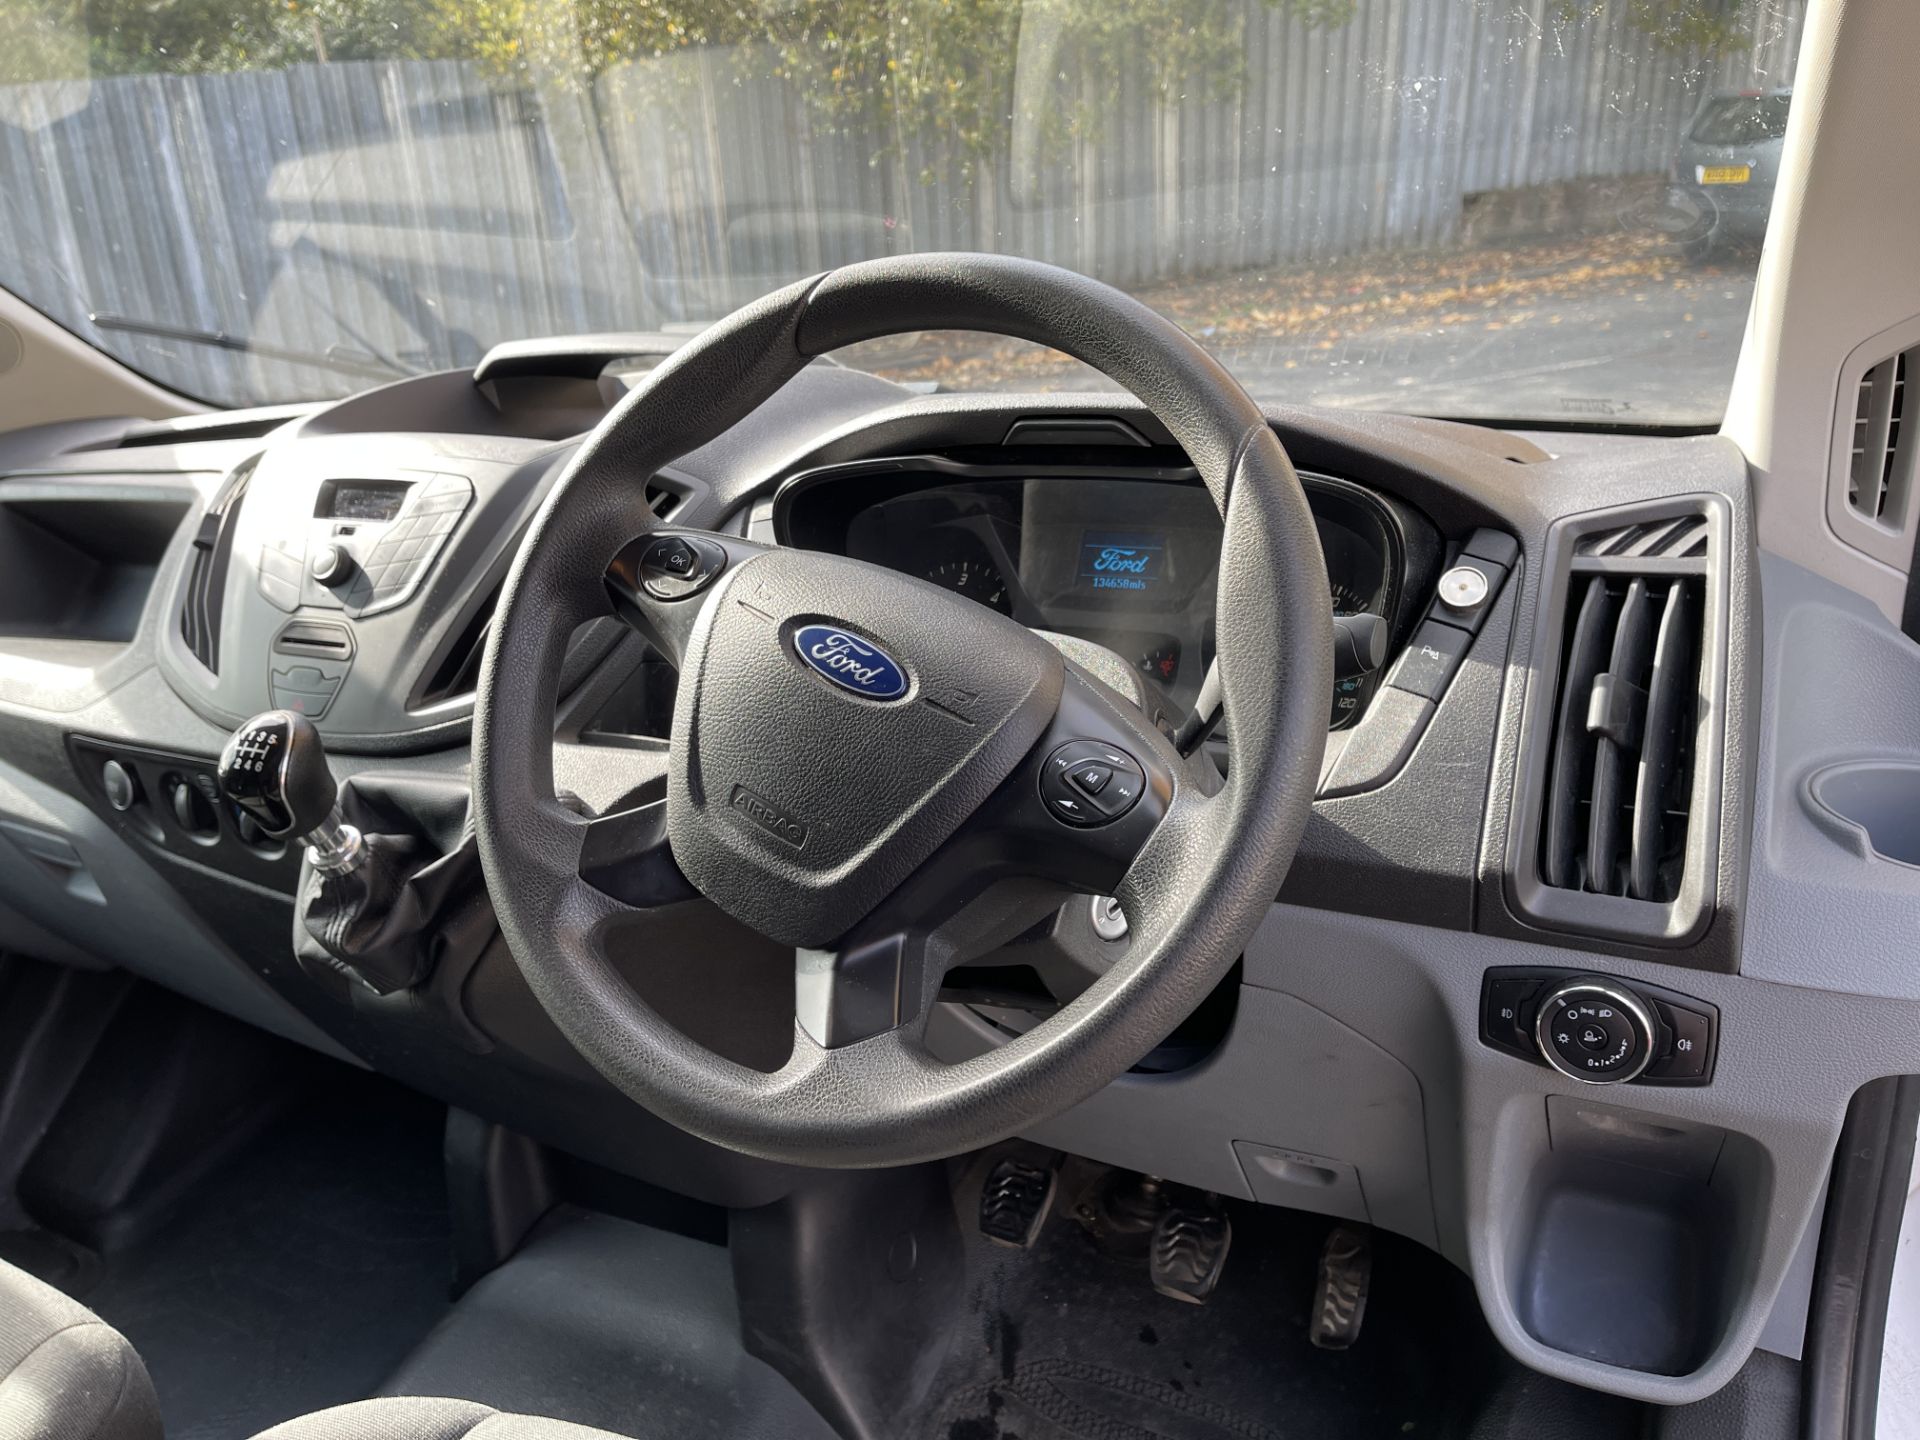 2018 - Ford Transit 350 L4 Diesel Panel Van - Image 23 of 46